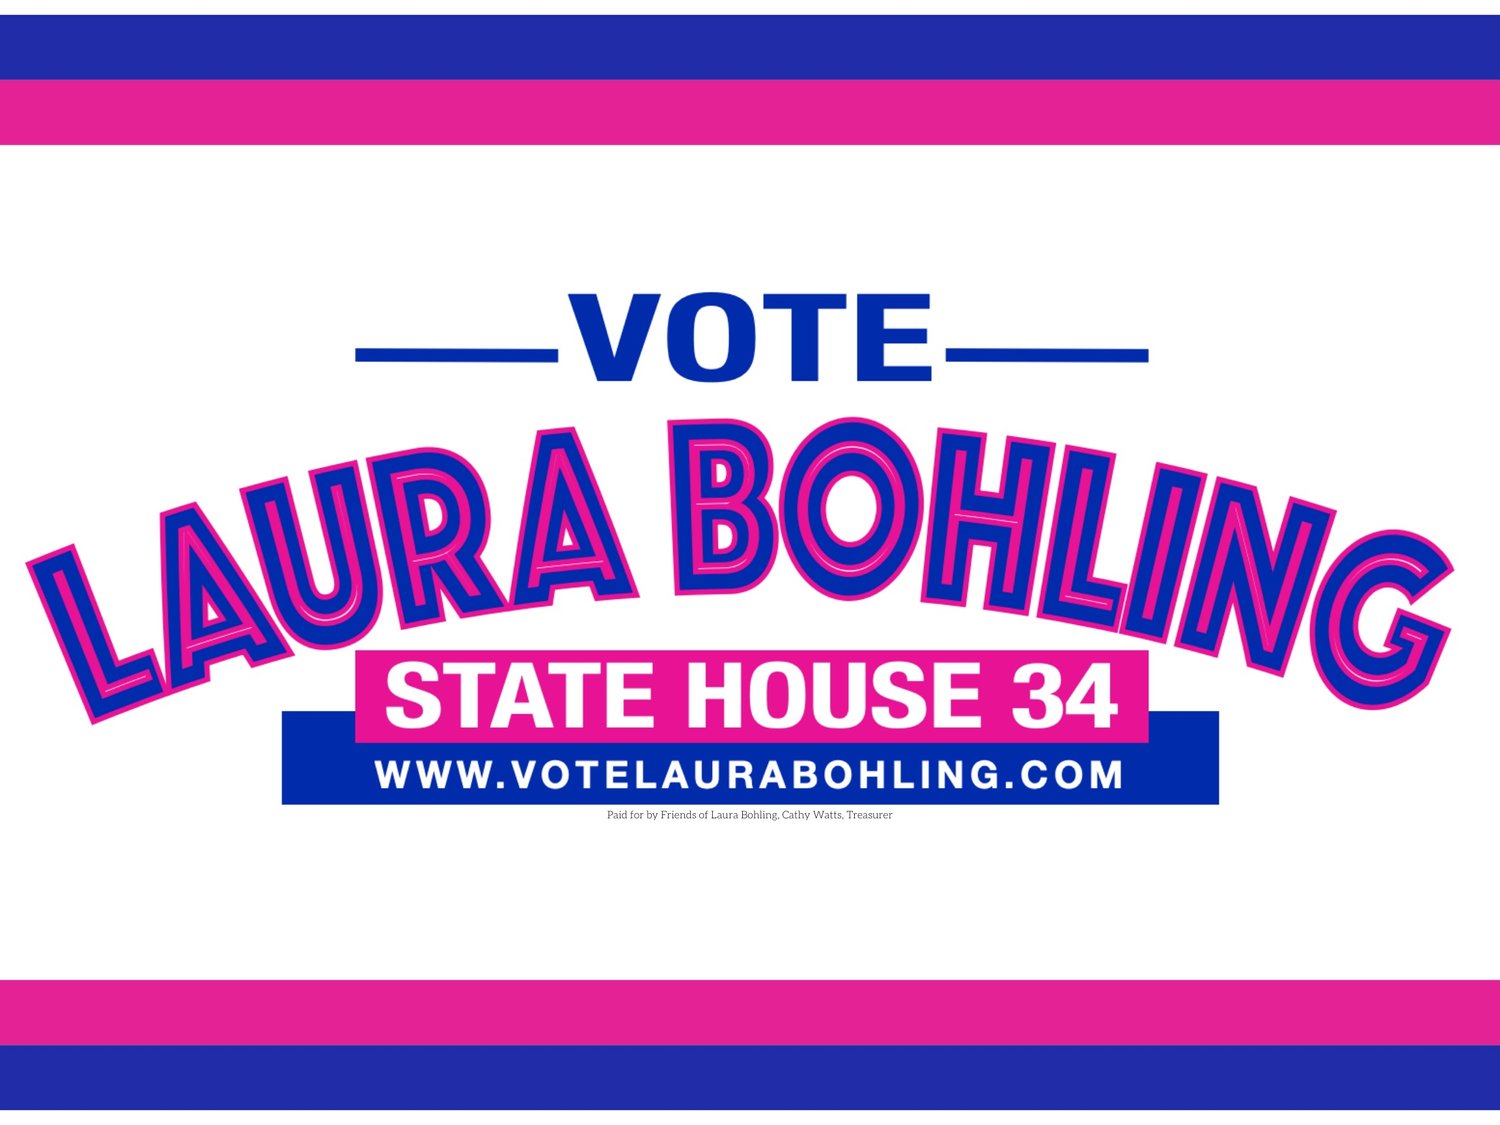 Laura Bohling for TN House 34